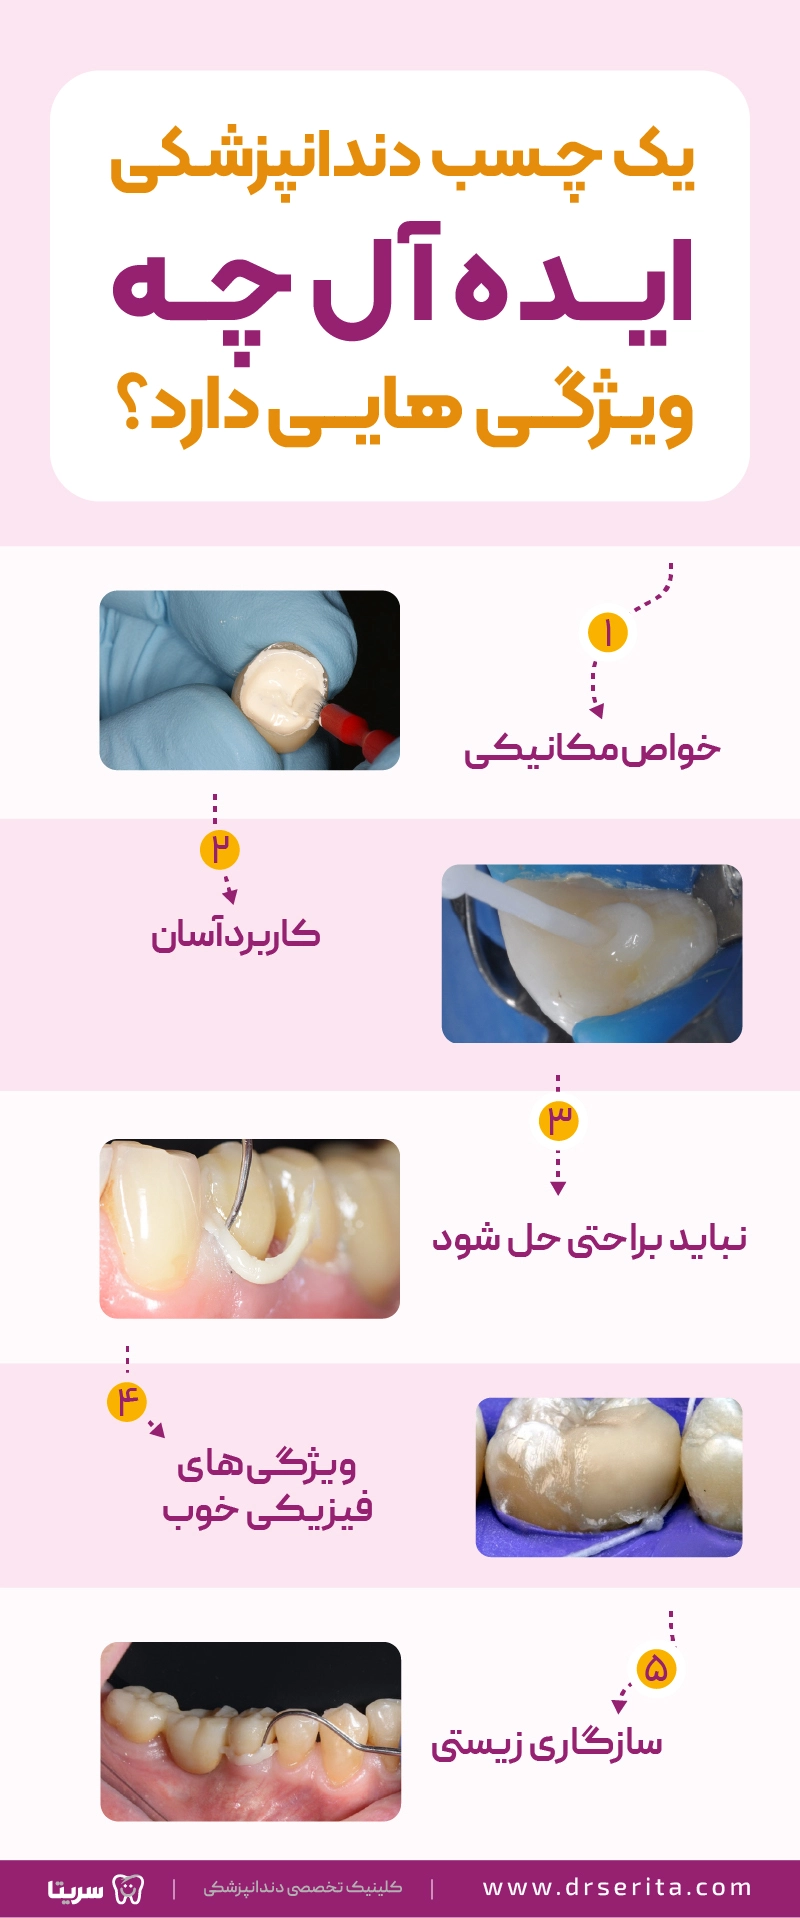 اینفوگرافیک ویژگی های چسپ ایده آل دندانپزشکی شامل 5 مورد